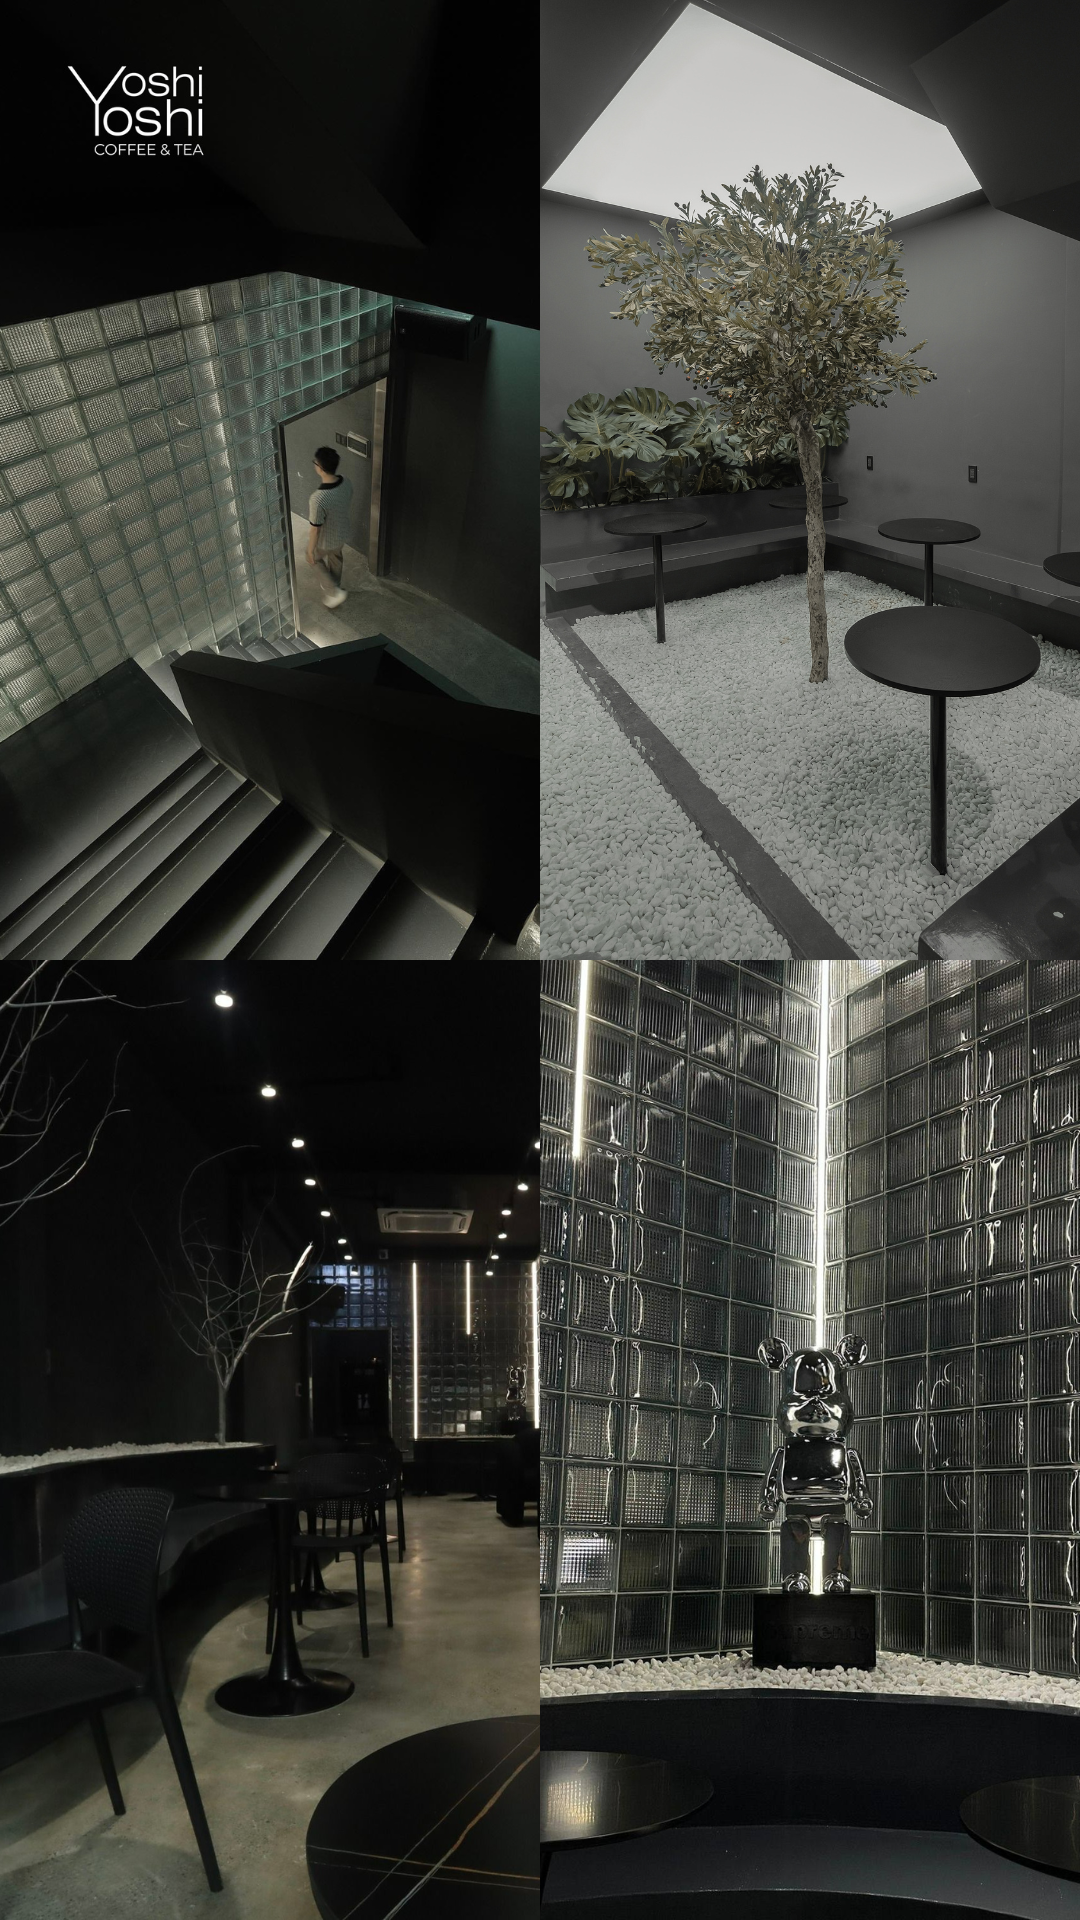 Phát sốt với không gian và thiết kế đẹp mắt của YoshiYoshi Coffee & Tea - Ảnh 4.